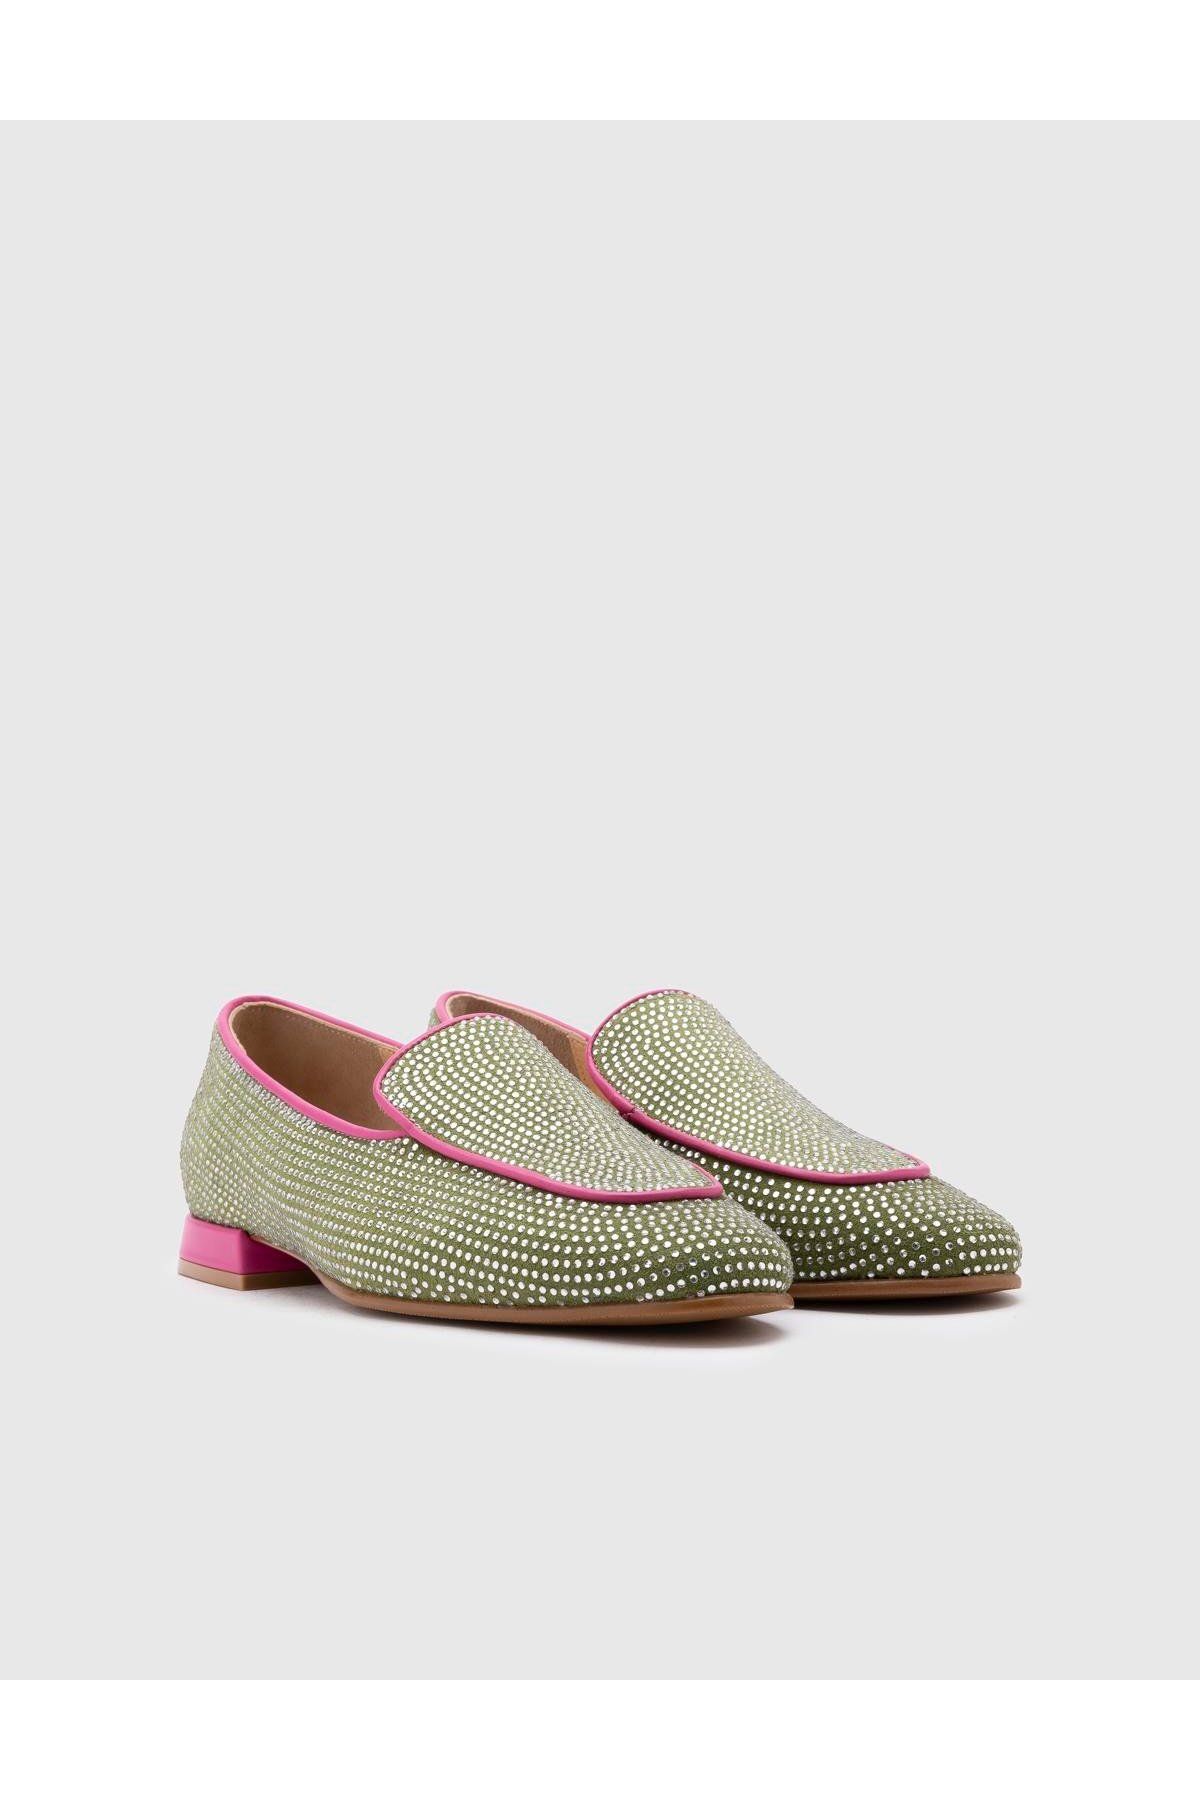 İlvi Himari Hakiki Süet Deri Taşlı Kadın Yeşil Loafer Ayakkabı